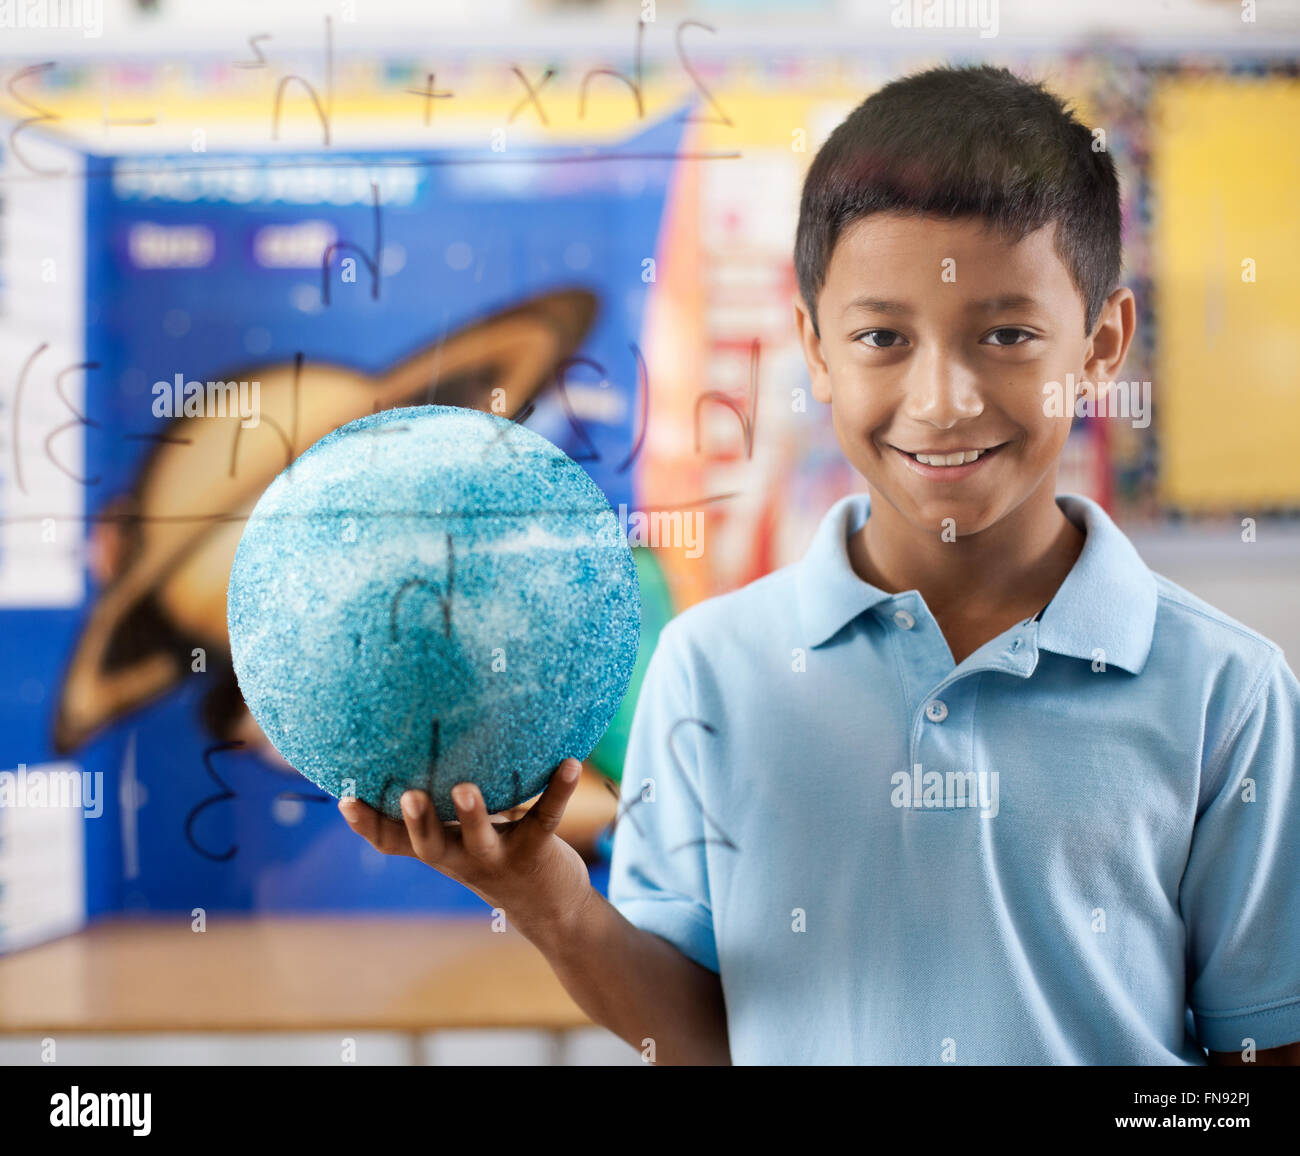 Ein Junge von einem klaren Board mit wissenschaftlichen Gleichungen stehen, hält einen Globus. Stockfoto